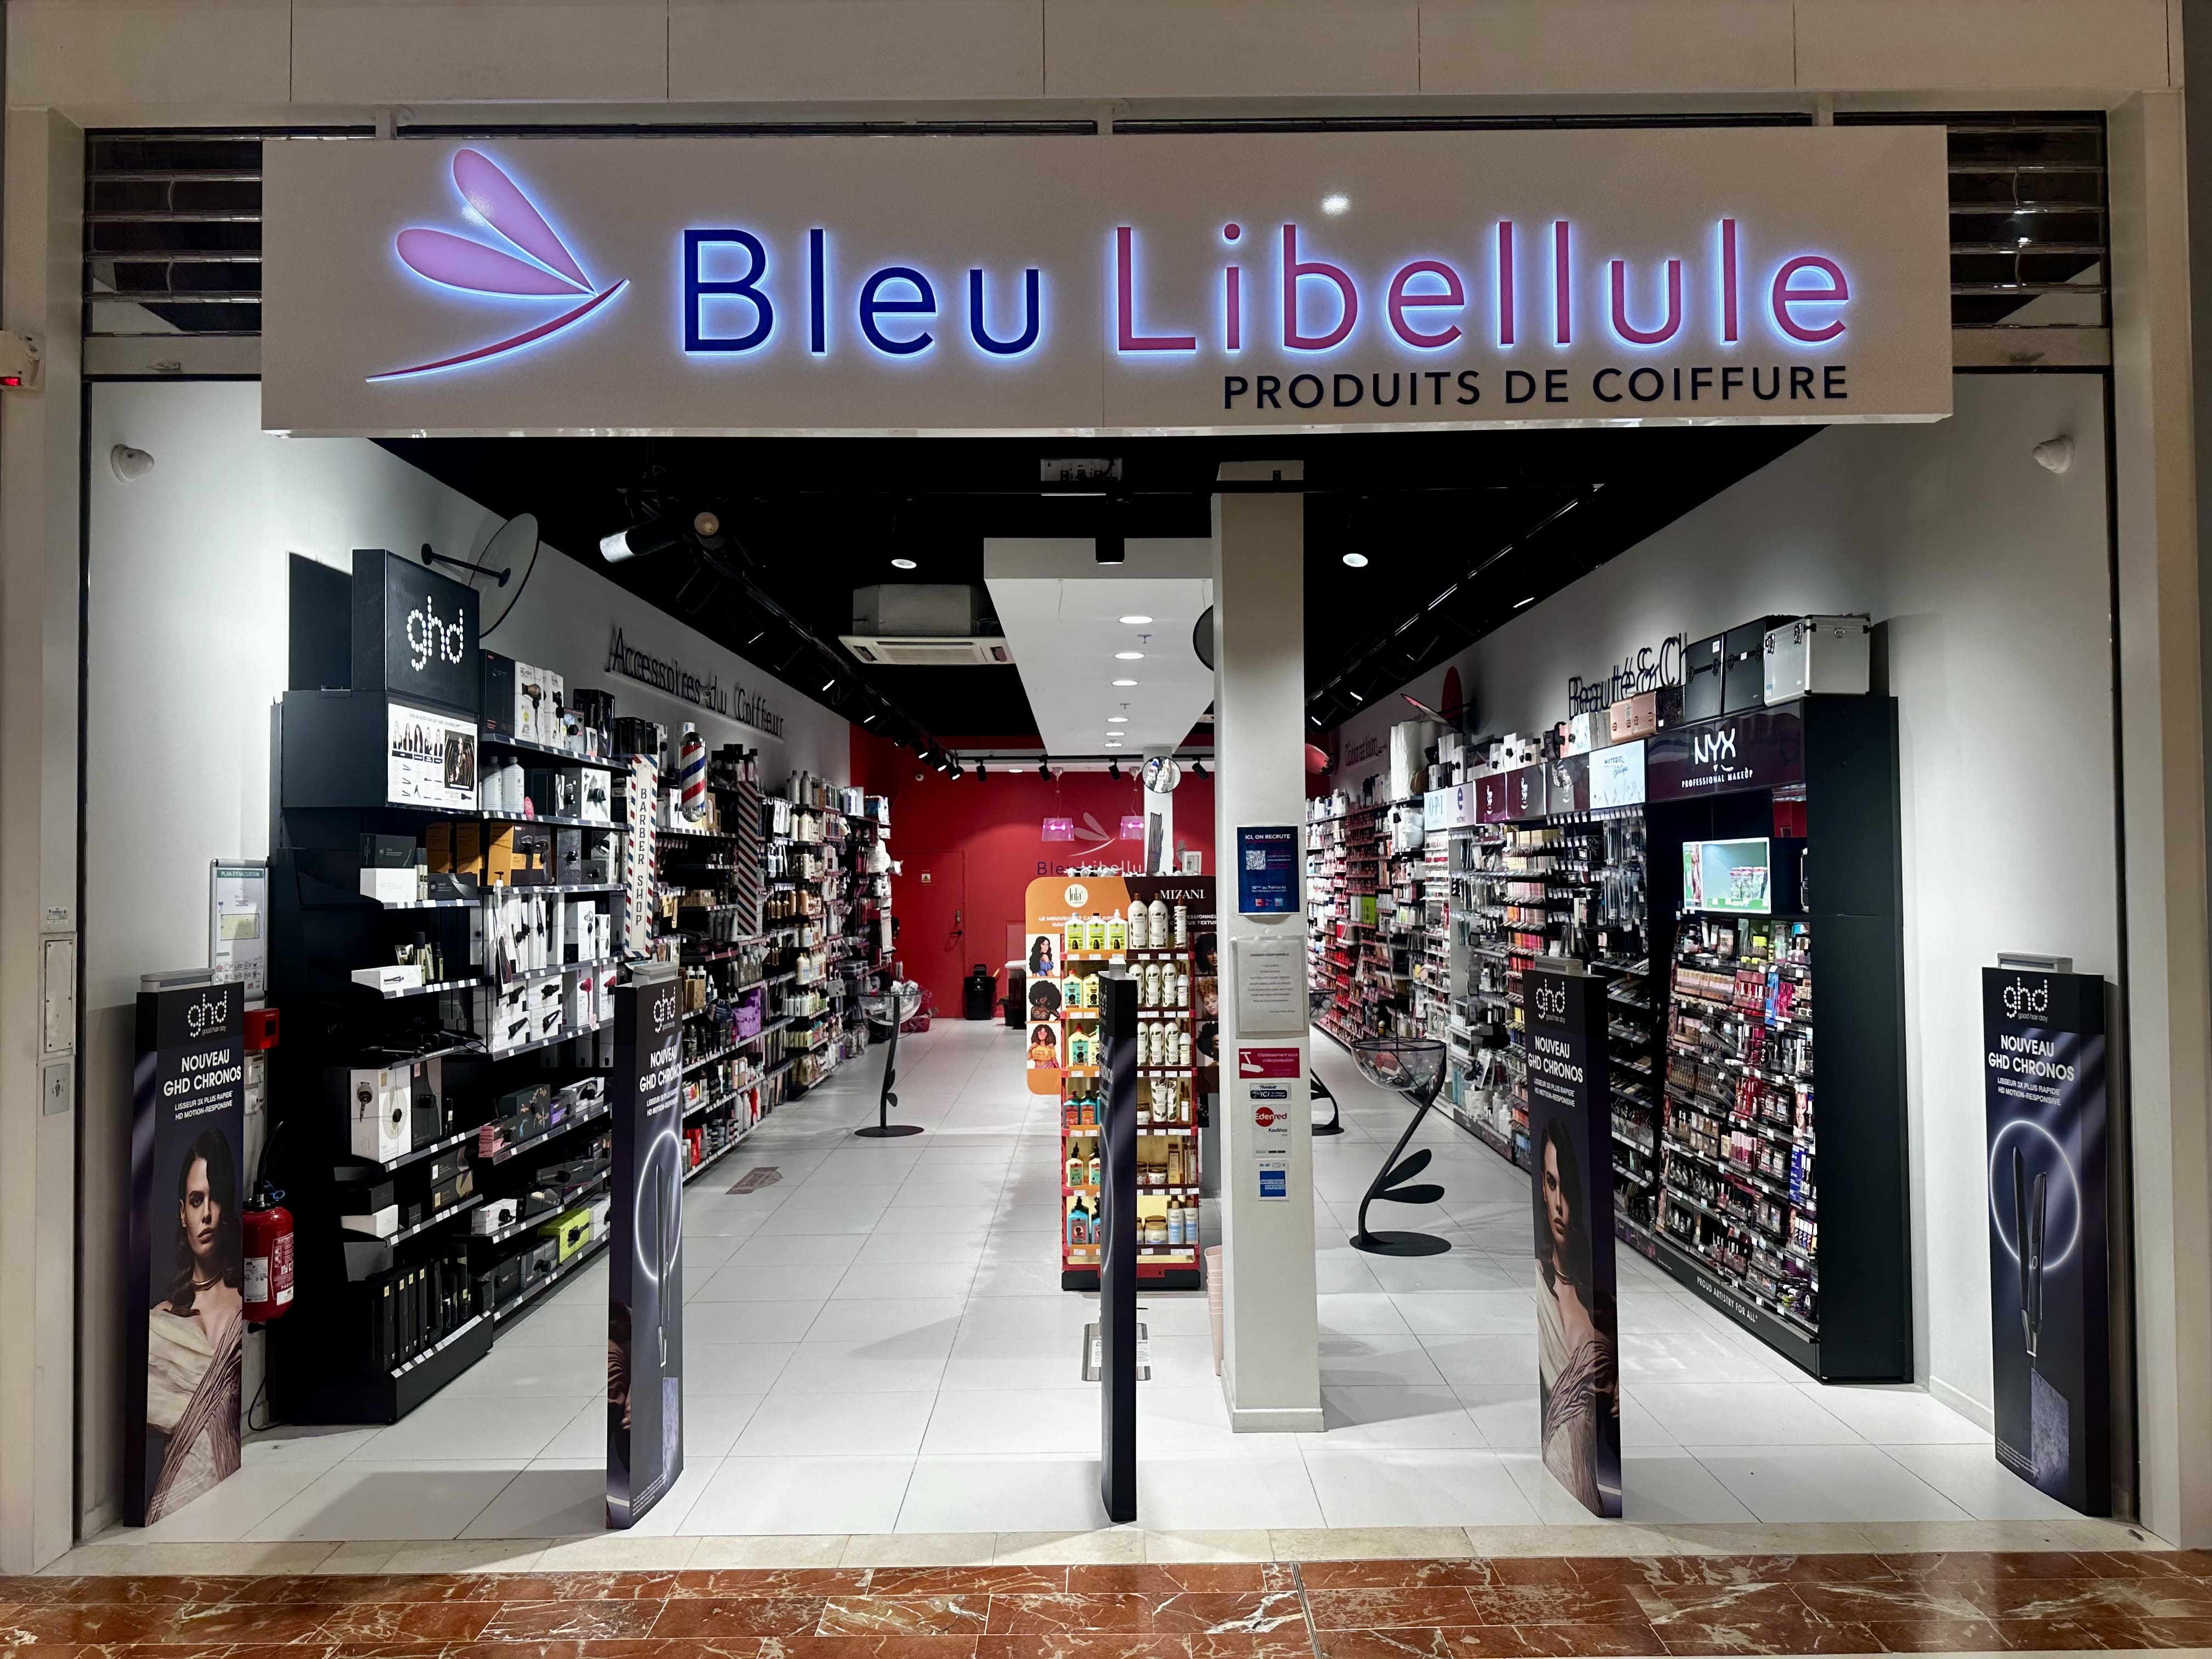 Boutique Bleu Libellule Caluire et cuire